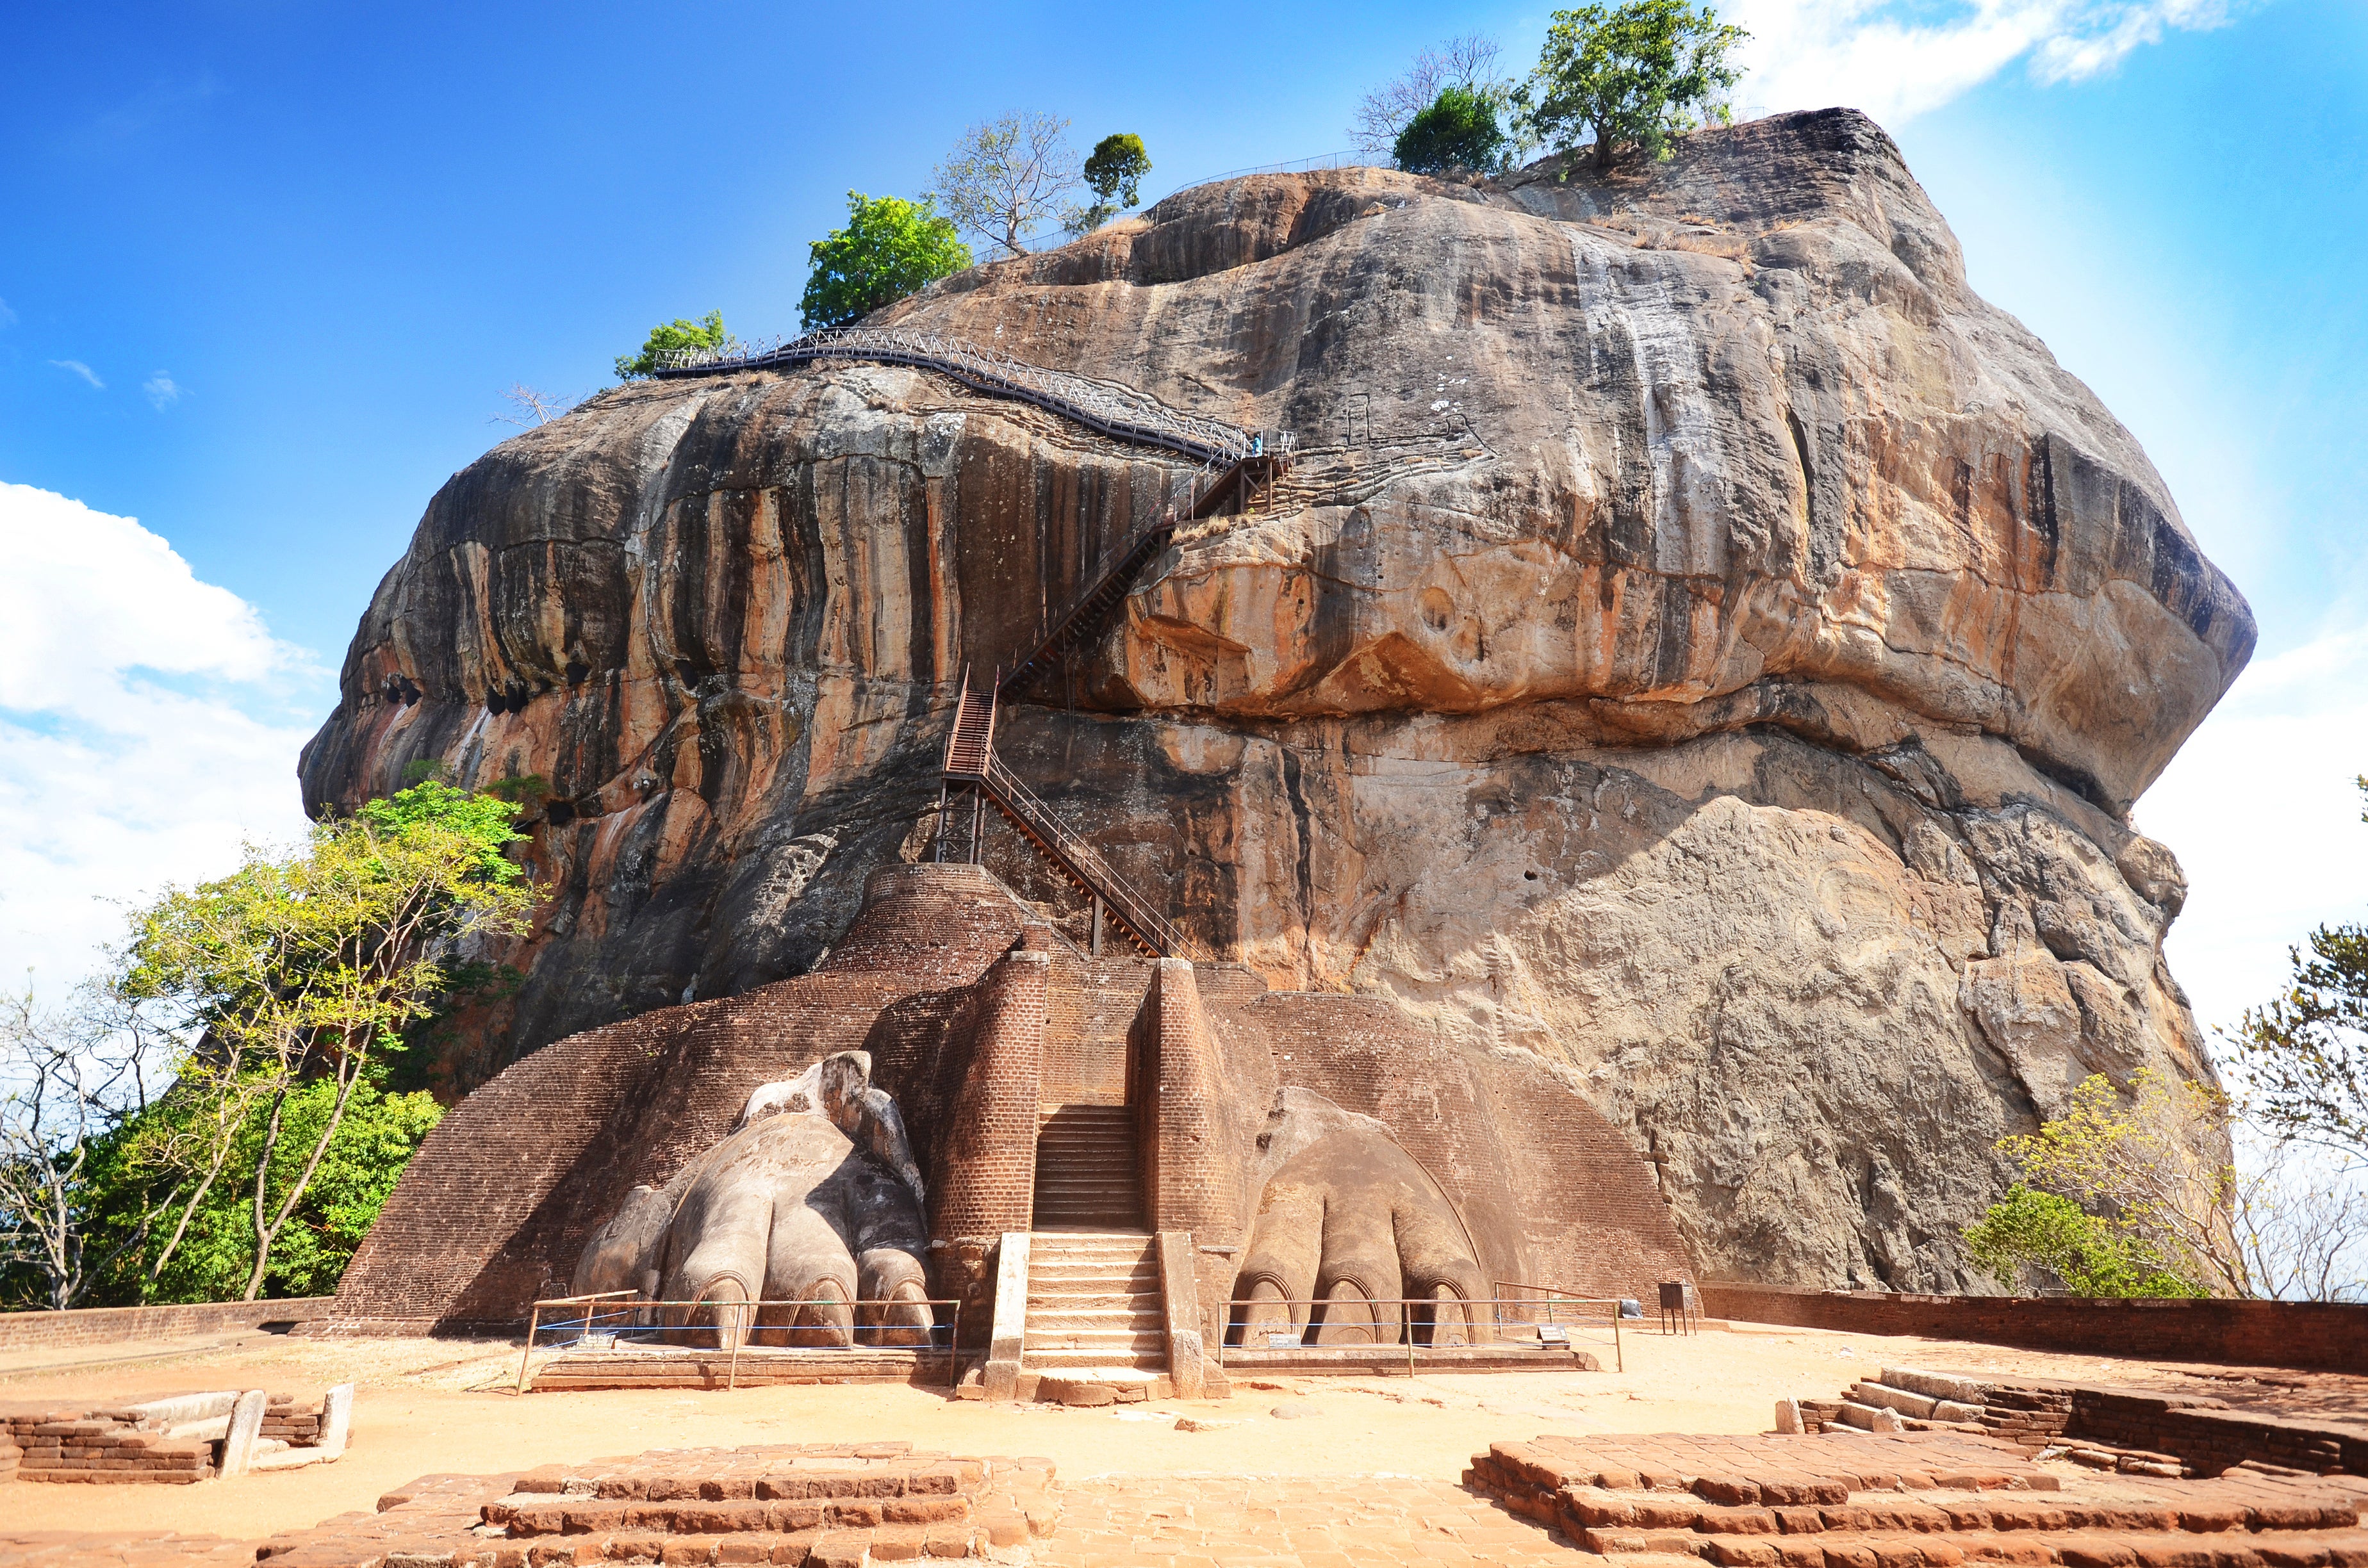 Sigiriya was used as a Buddhist monastery until the 14th century